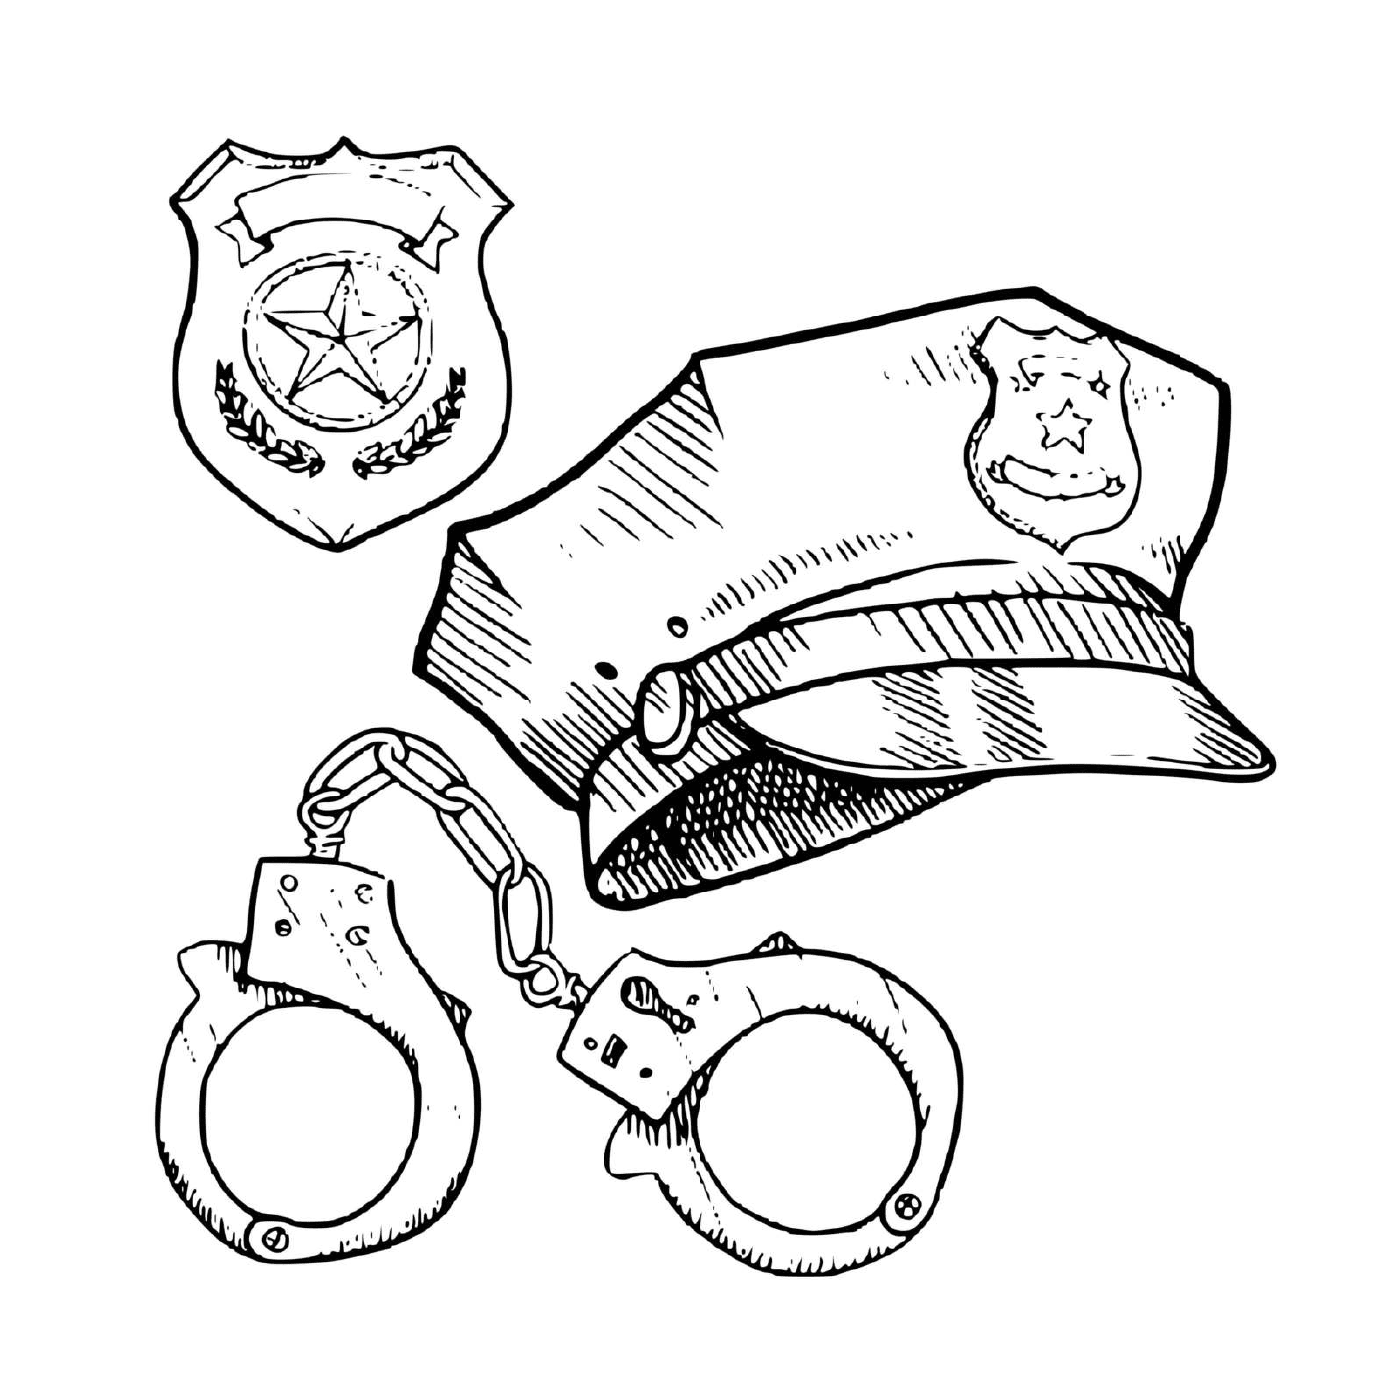  Equipo de policía: gorra, esposas 